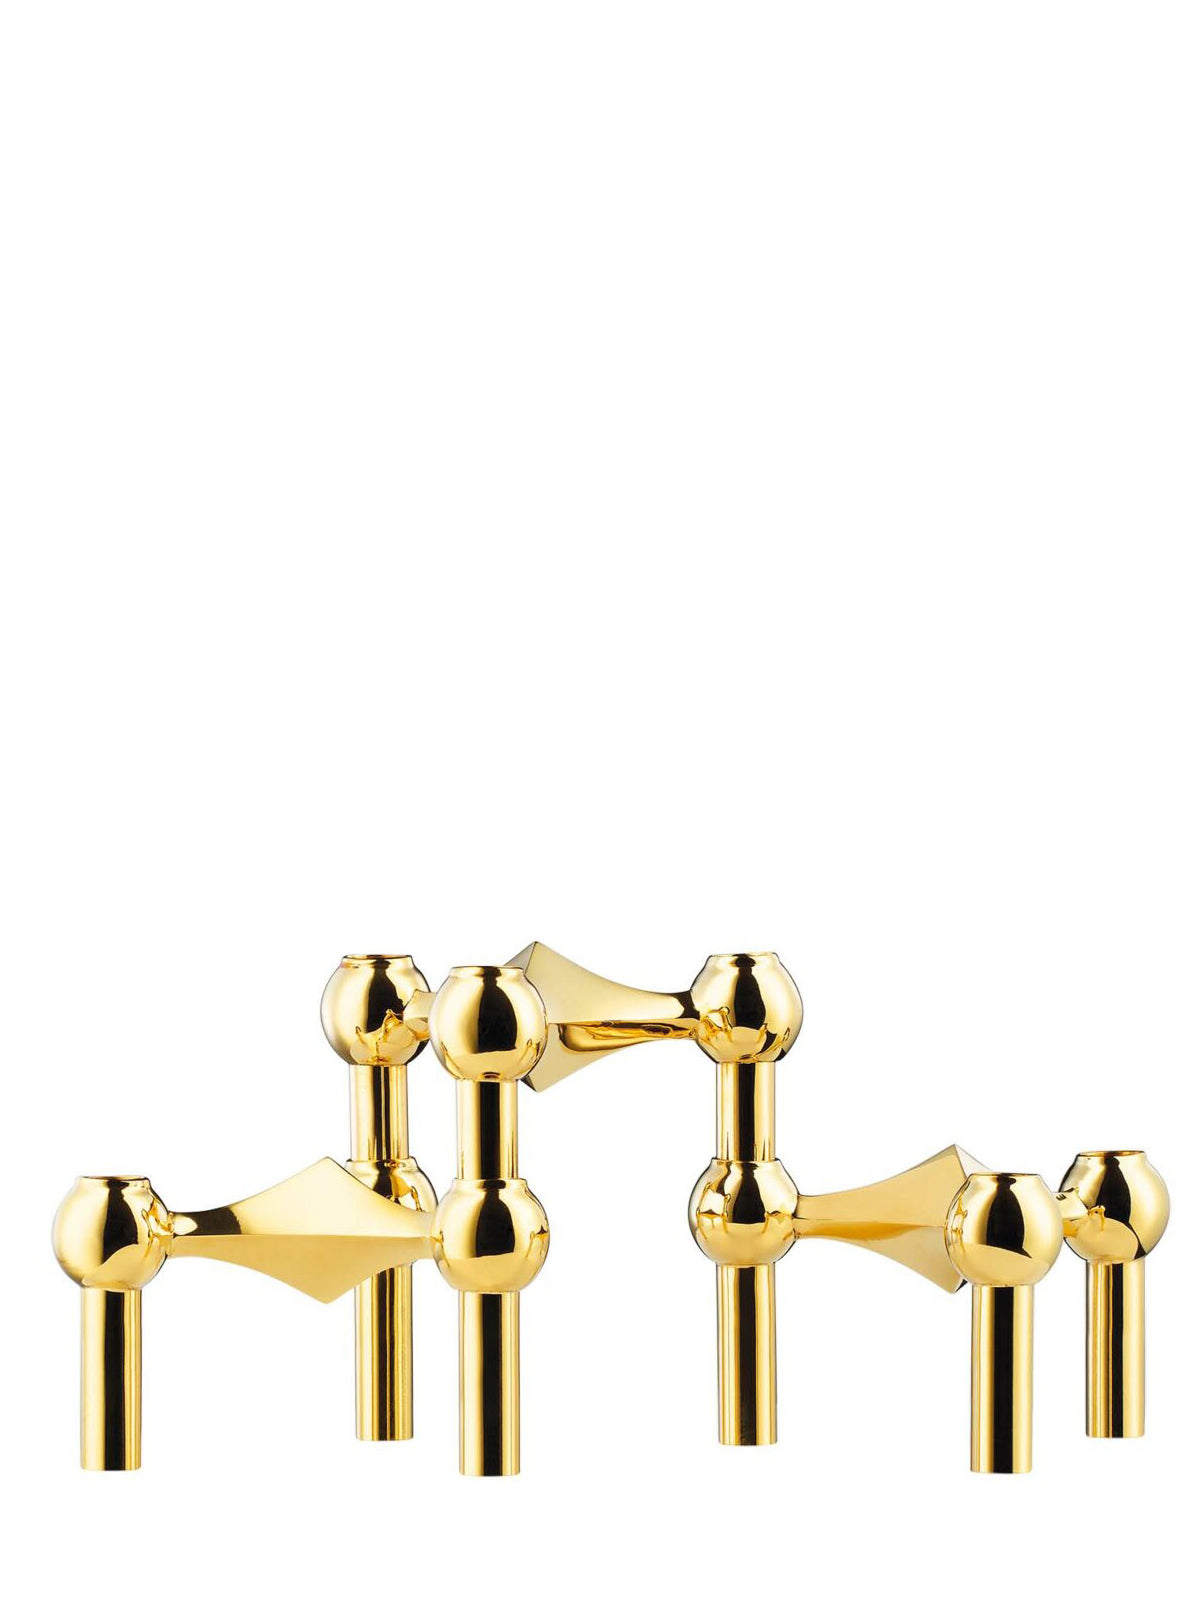 Nagel candle holder set of 3 pcs, solid brass